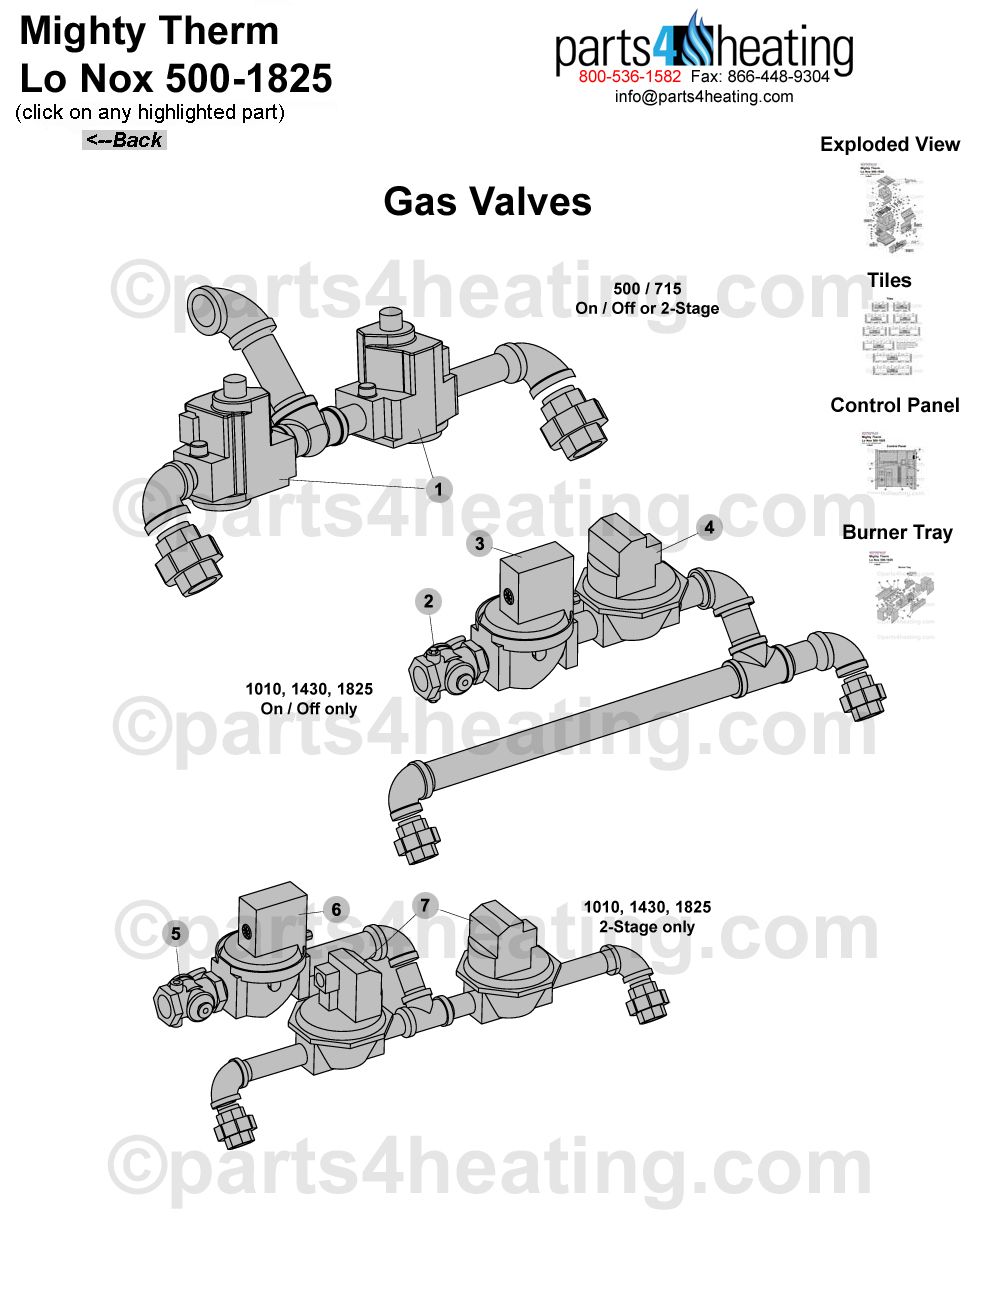 Mighty Therm Lo Nox 500-1825 Gas Valves